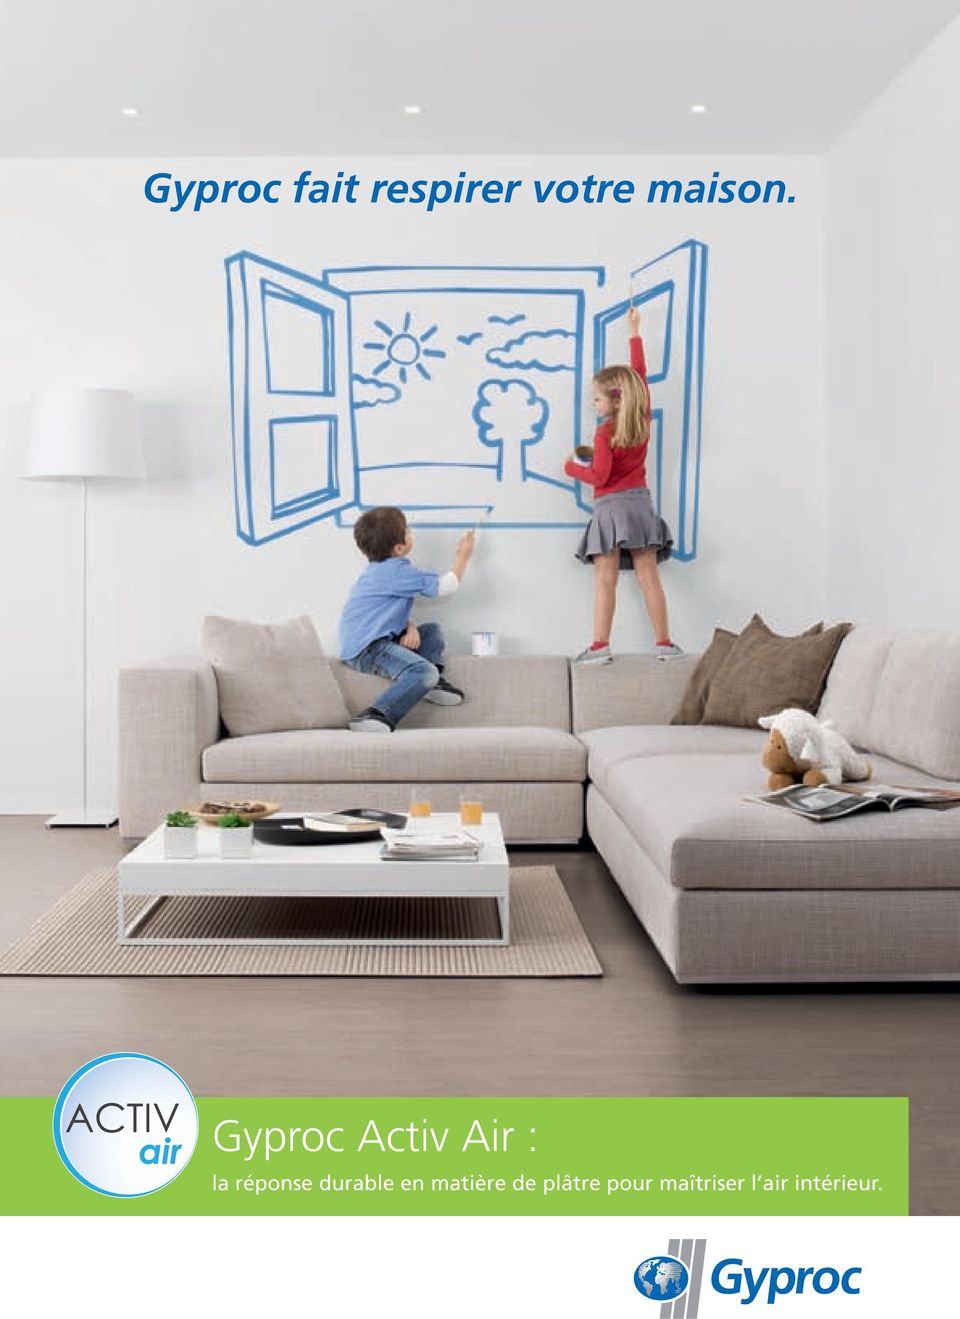 Gyproc Activ Air : la réponse